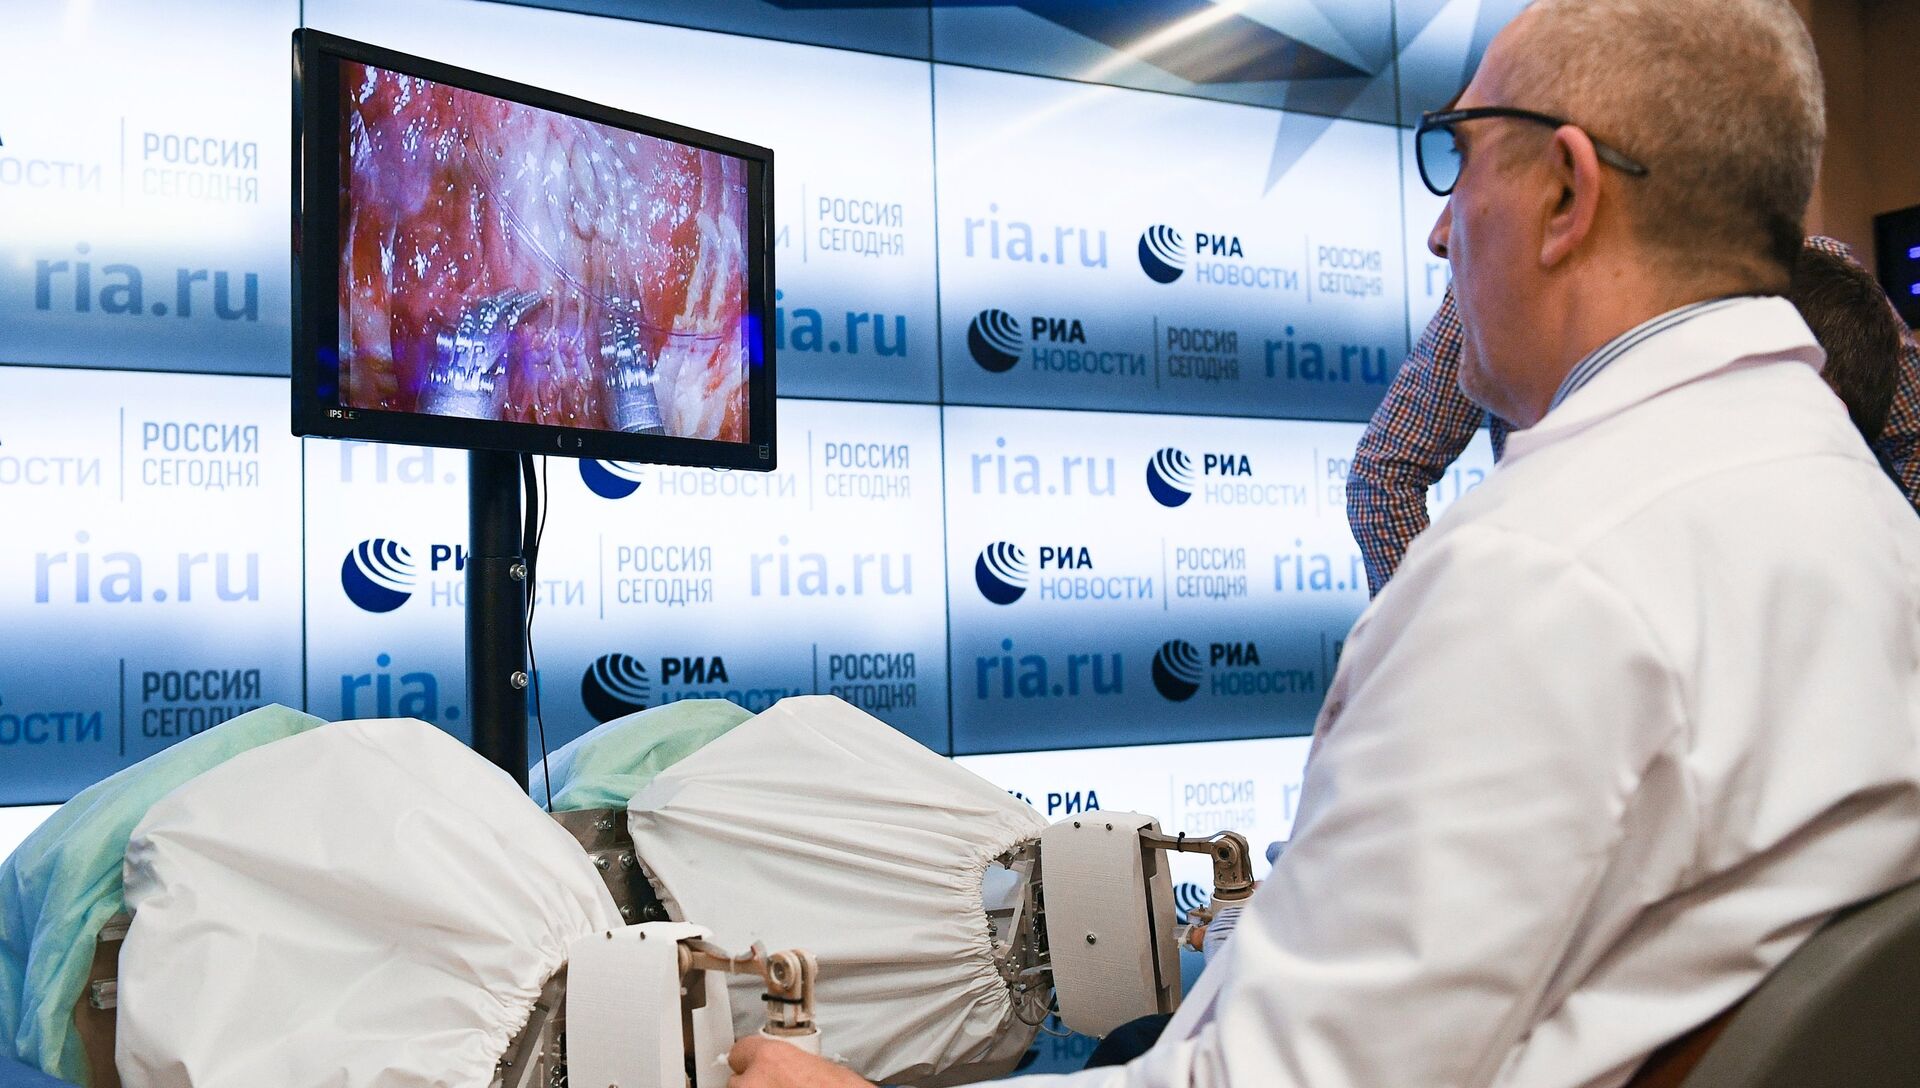 Презентация российского ассистирующего роботохирургического комплекса в МИА Россия сегодня. 5 апреля 2017 - РИА Новости, 1920, 06.04.2017